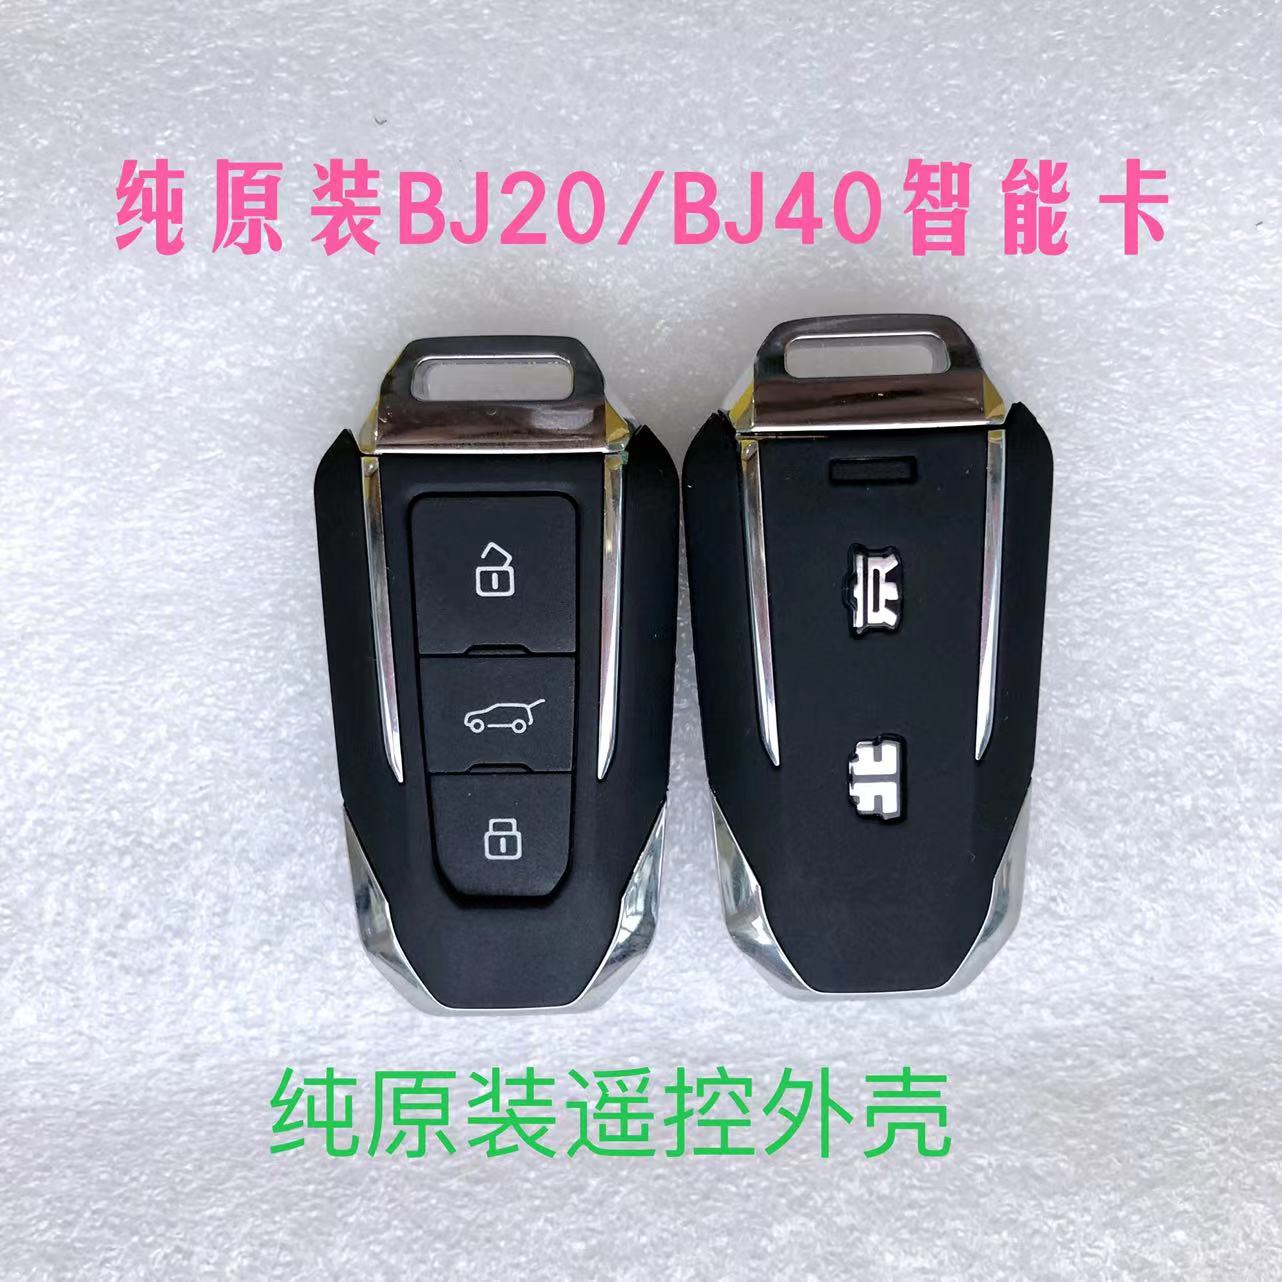 北汽吉普BJ20 BJ40智能卡 北京吉普BJ20 BJ40智能遥控器 钥匙外壳